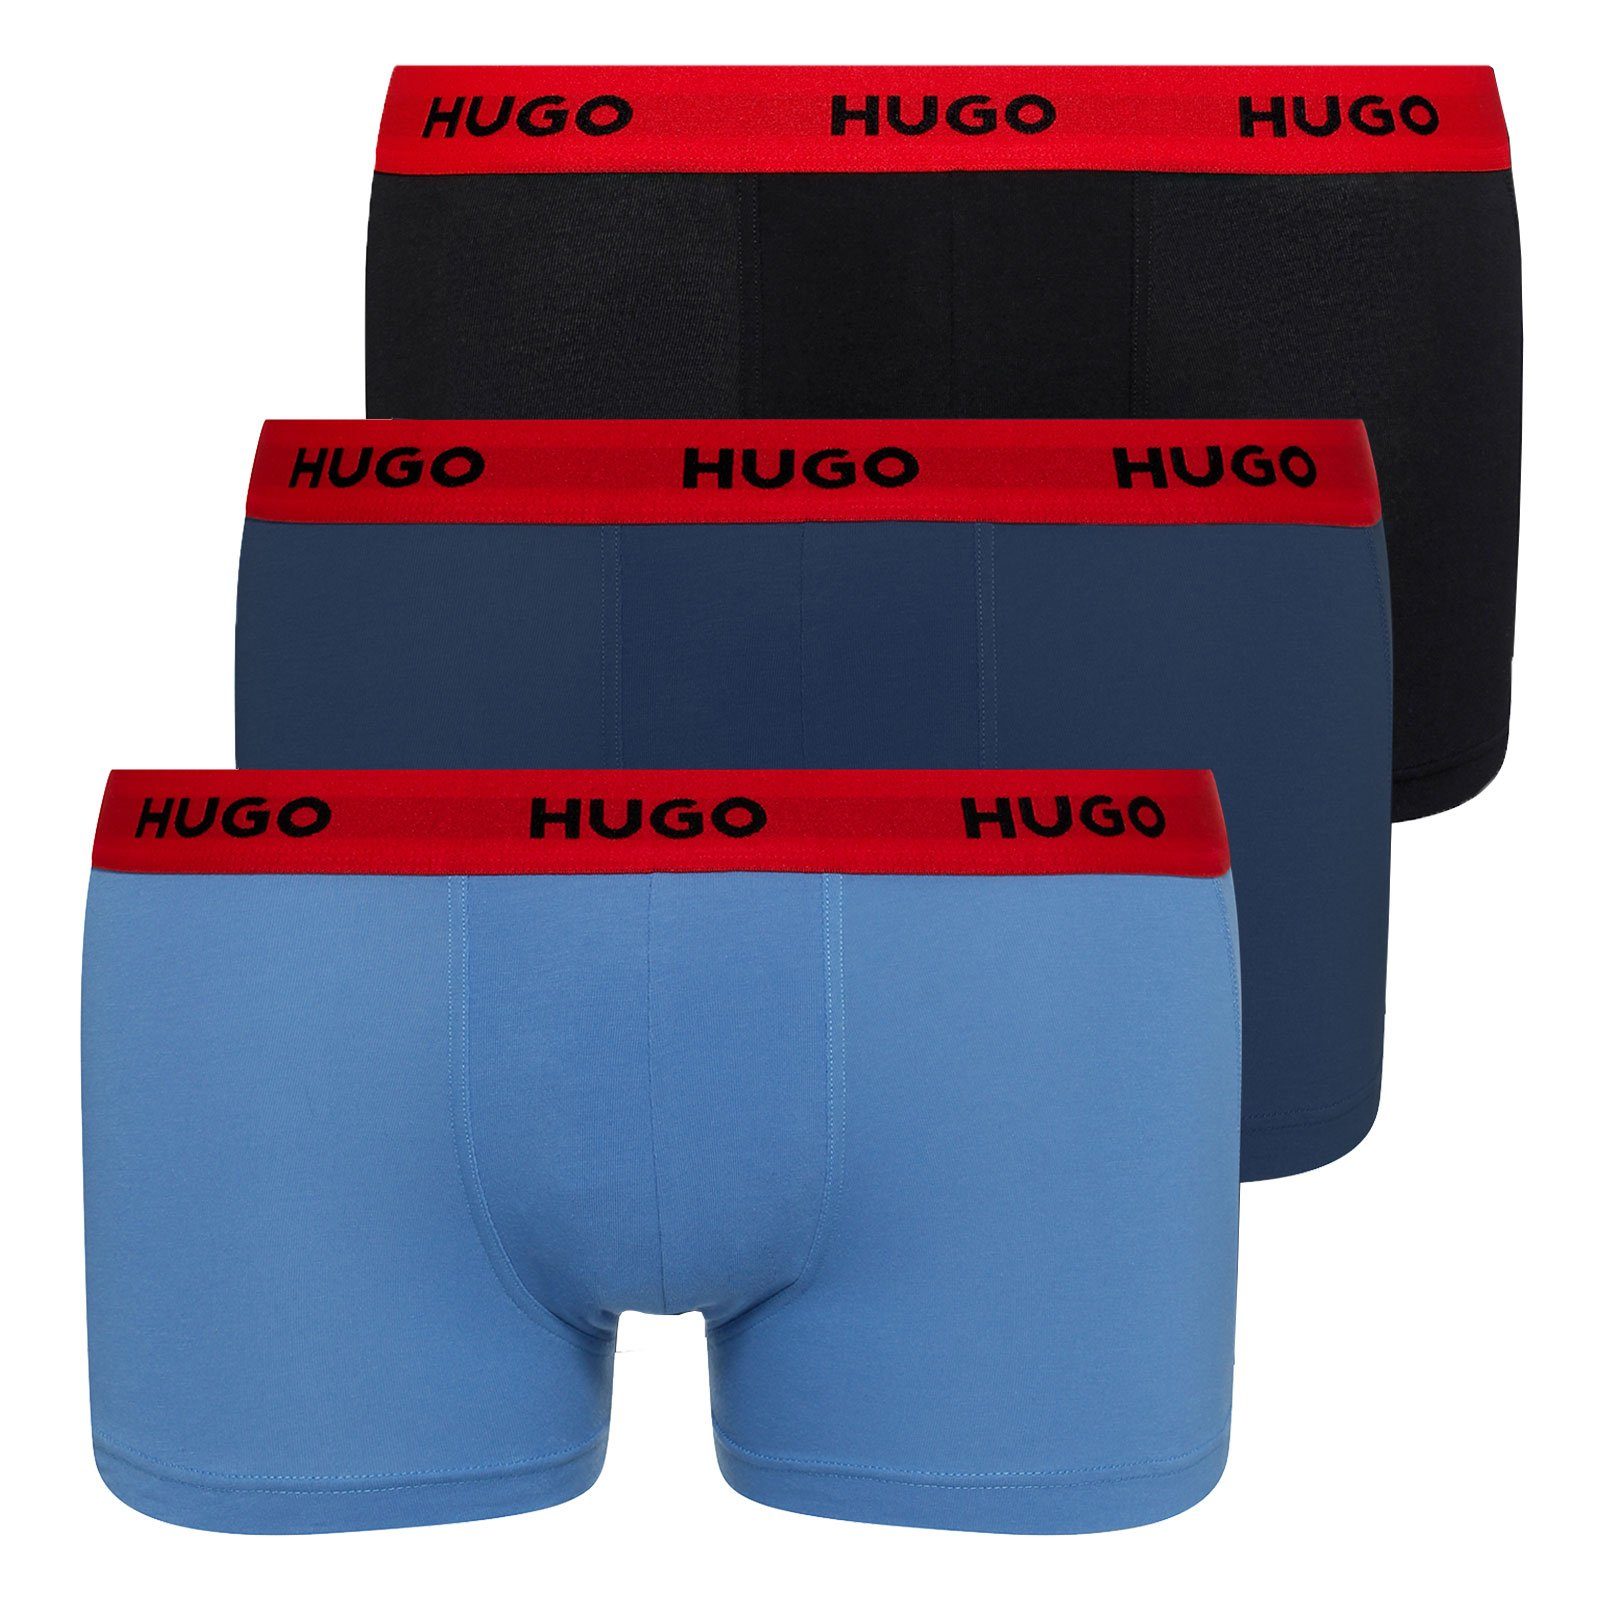 HUGO Trunk Triplet Pack (3-St., 3er Set) mit umlaufendem Markenschriftzug am Bund 961 black / navy / blue